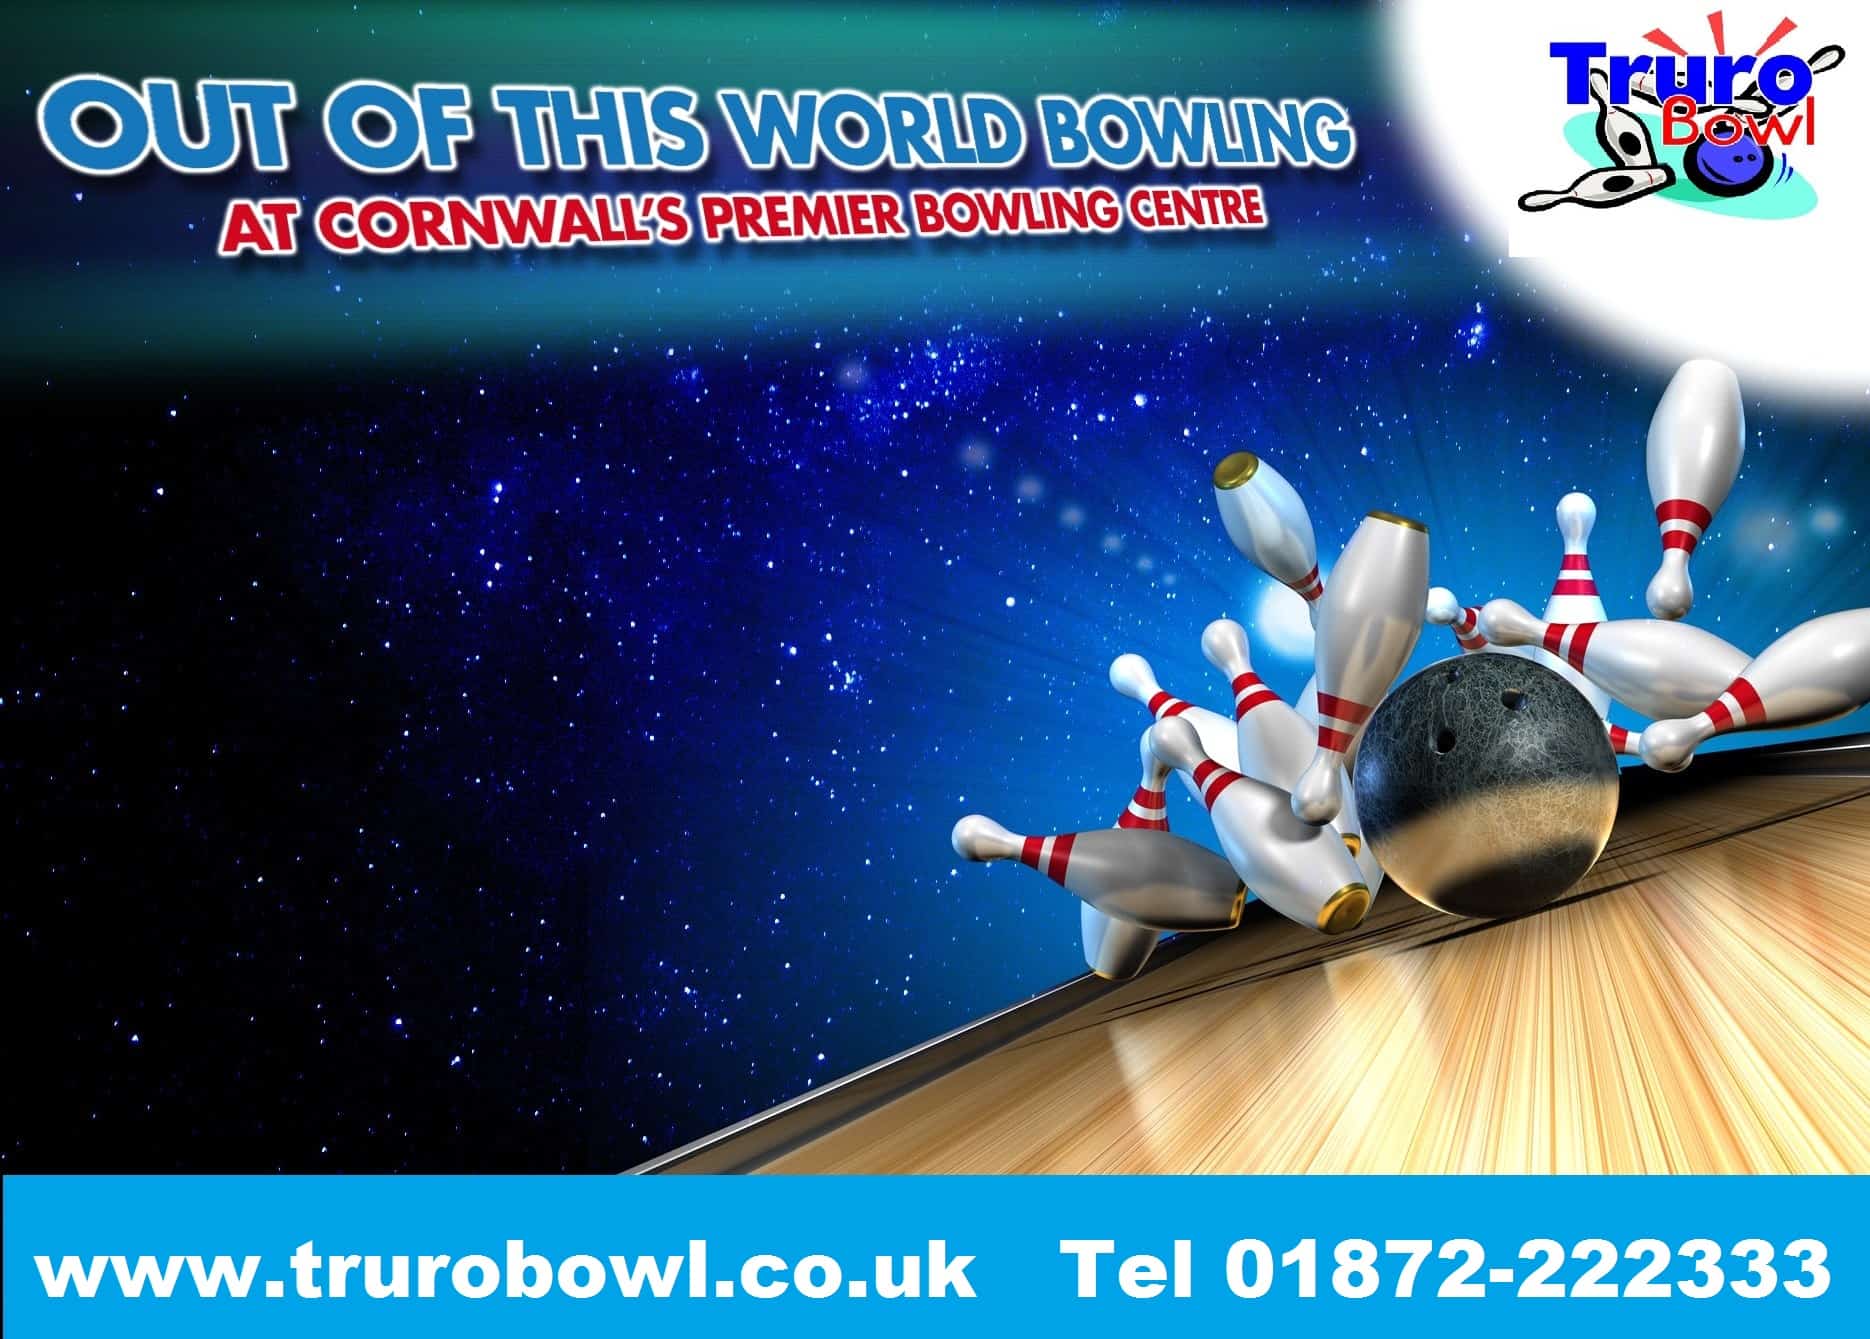 Truro Bowl in UK